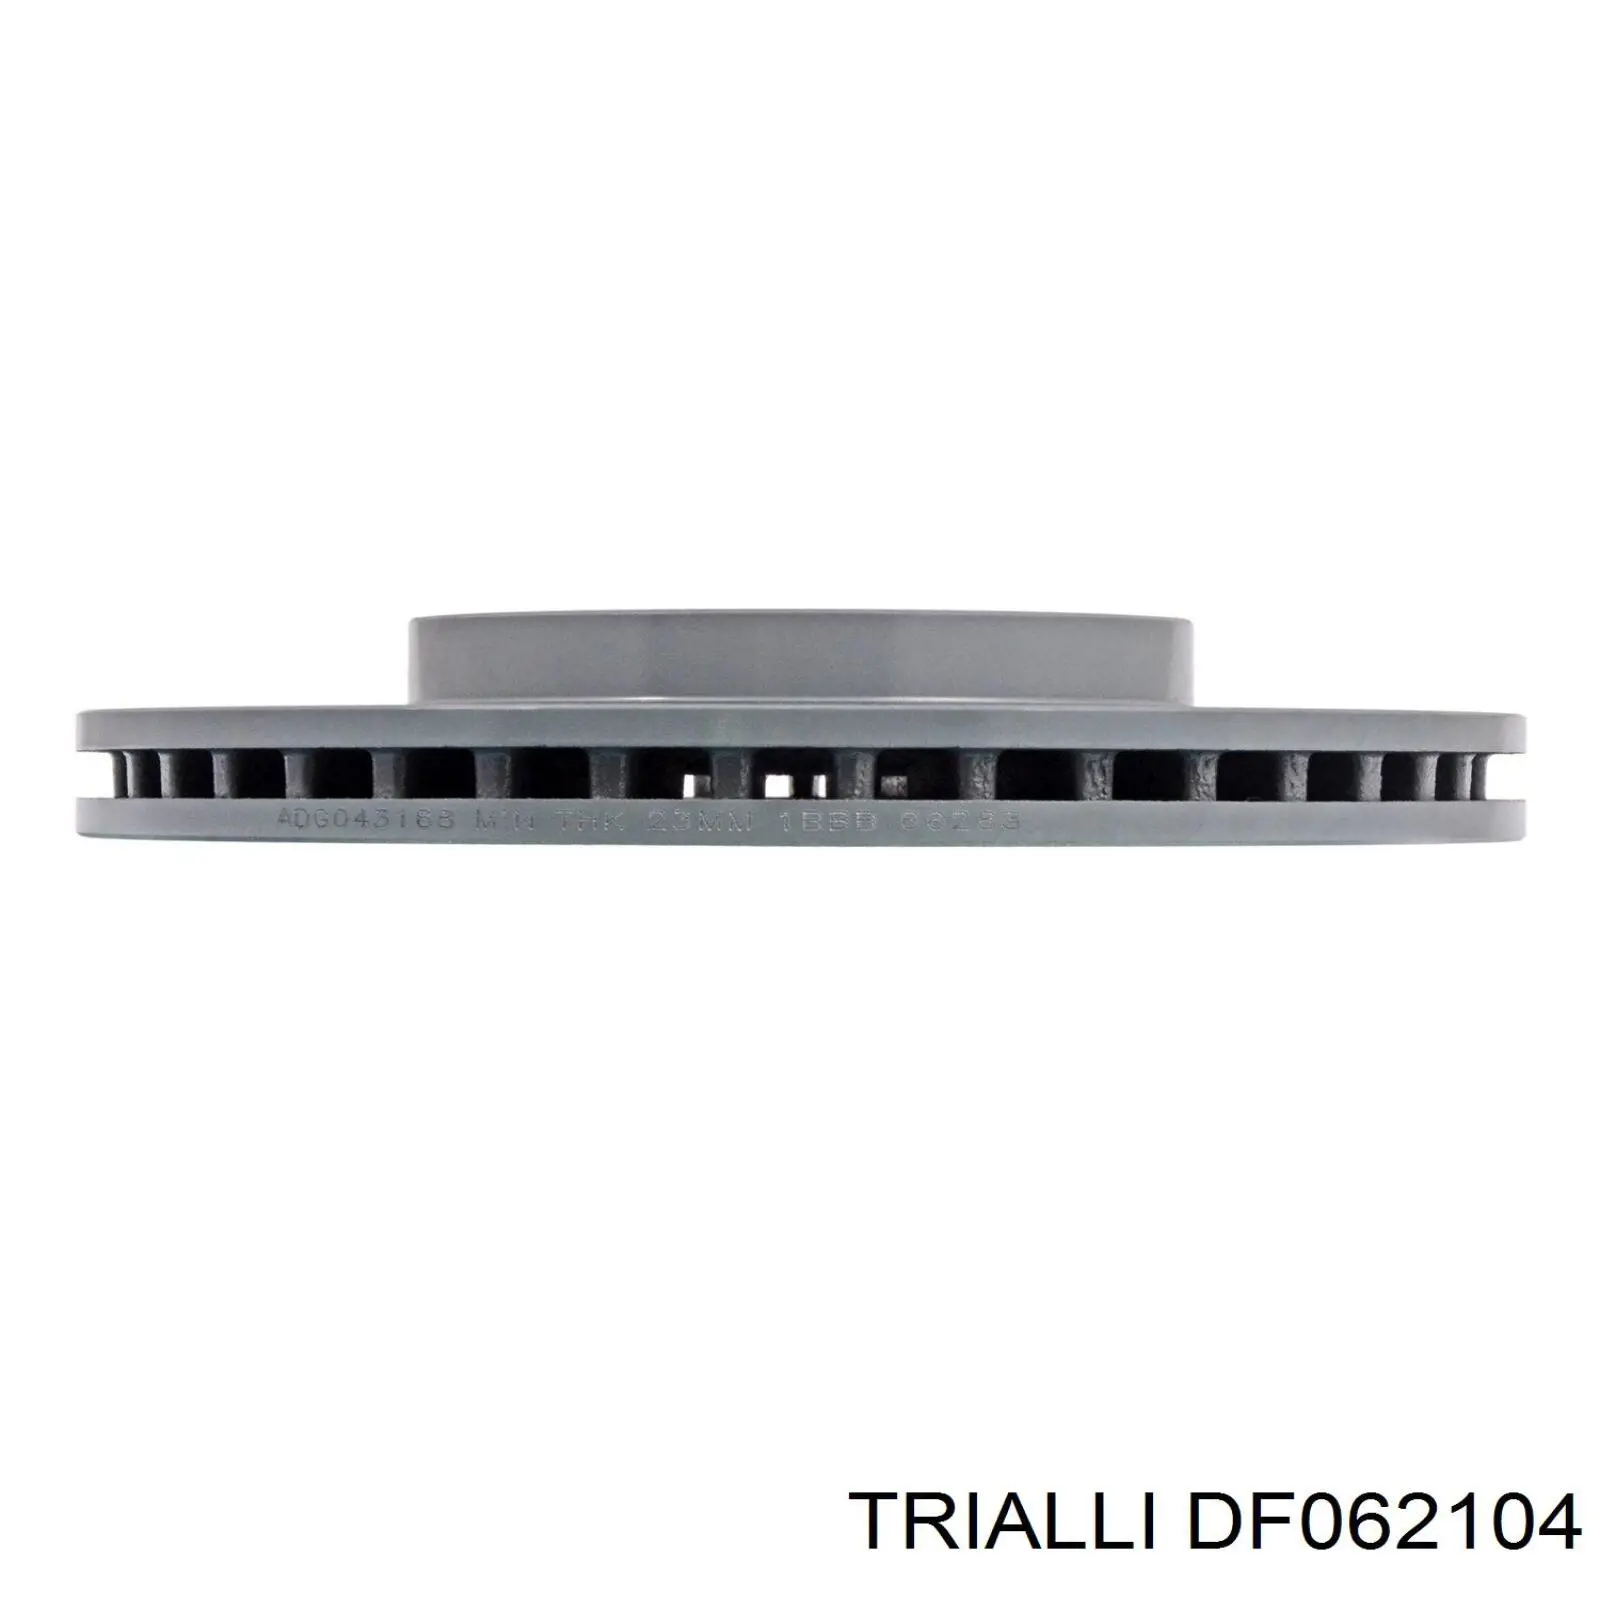 DF062104 Trialli disco de freno delantero